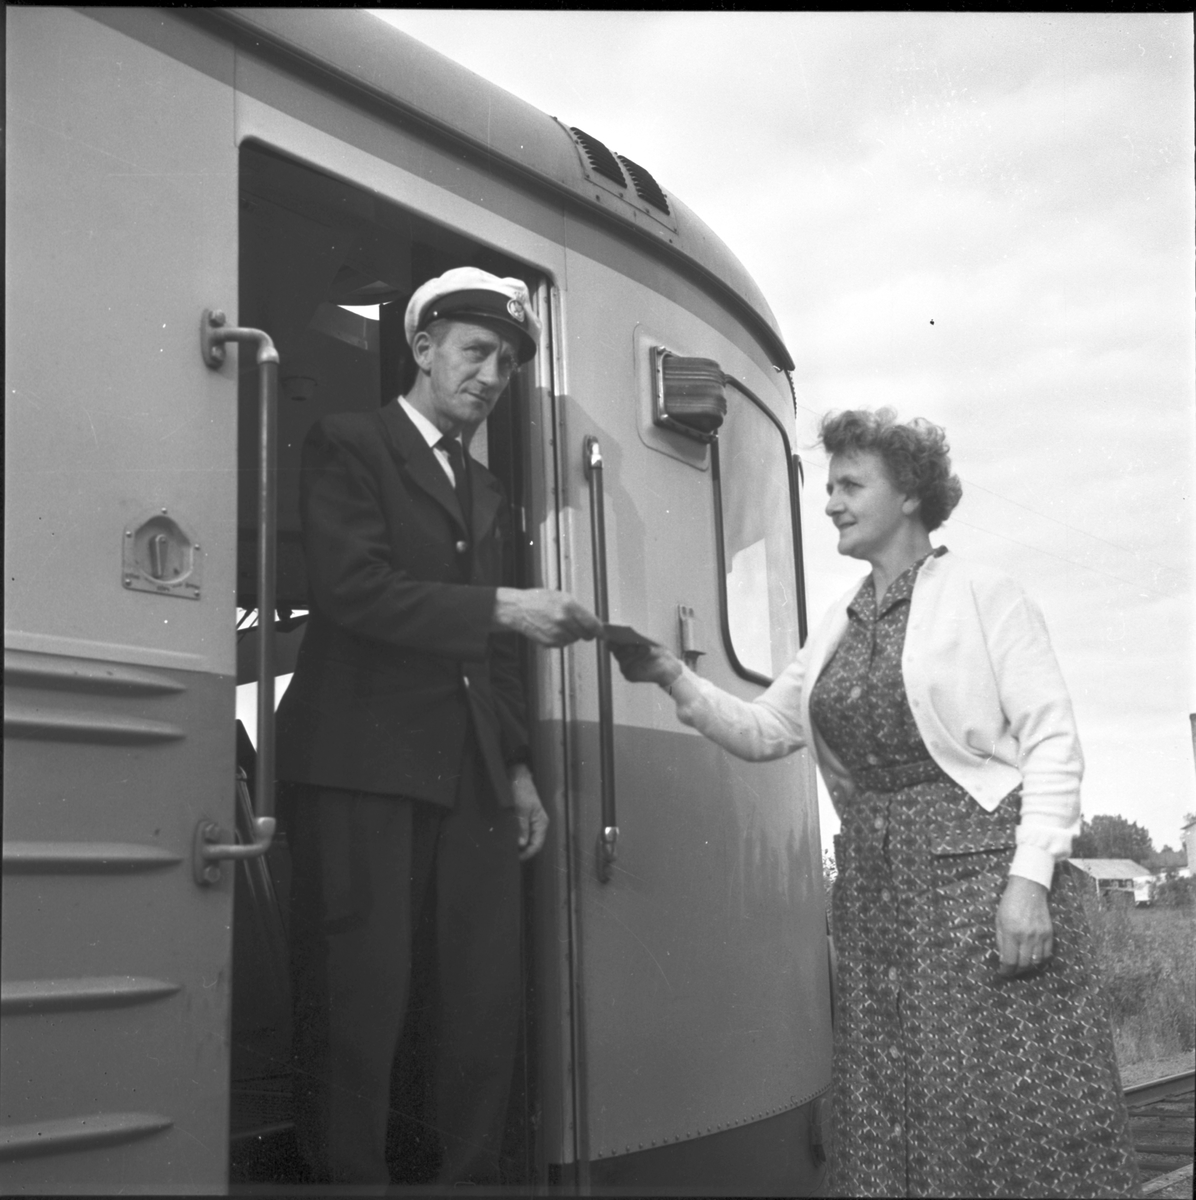 Freluga station dras in.
31/8 1961